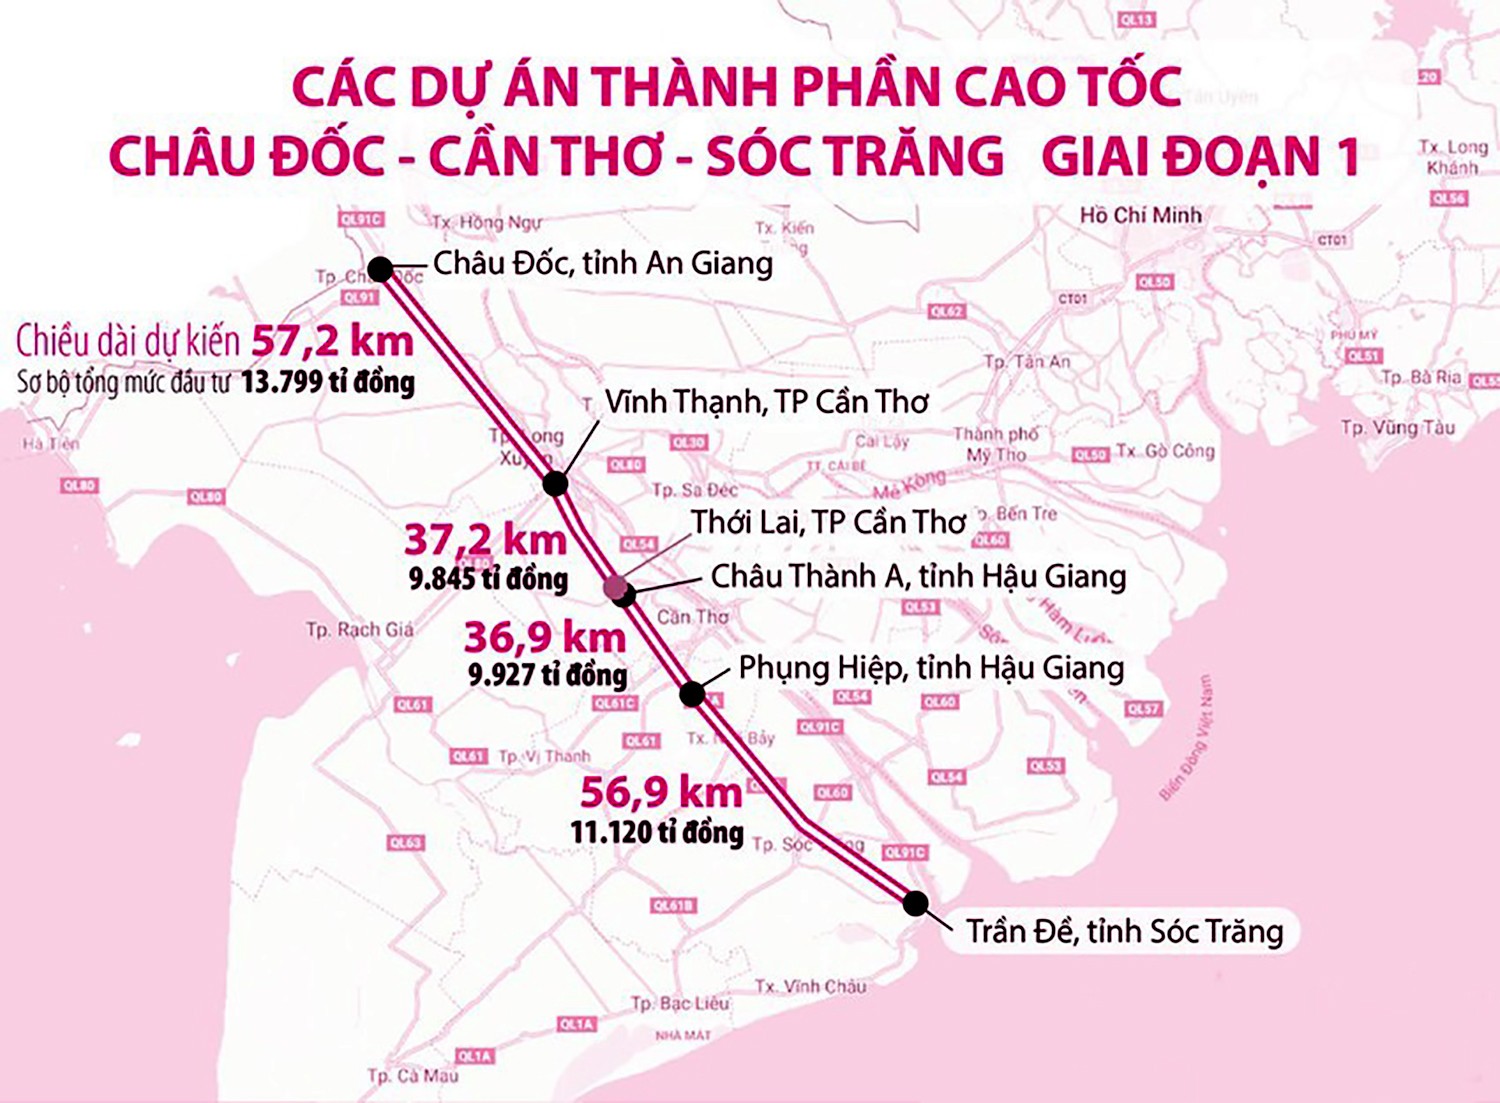 
Sơ đồ tuyến cao tốc Châu Đốc - Cần Thơ - Sóc Trăng giai đoạn 1.
